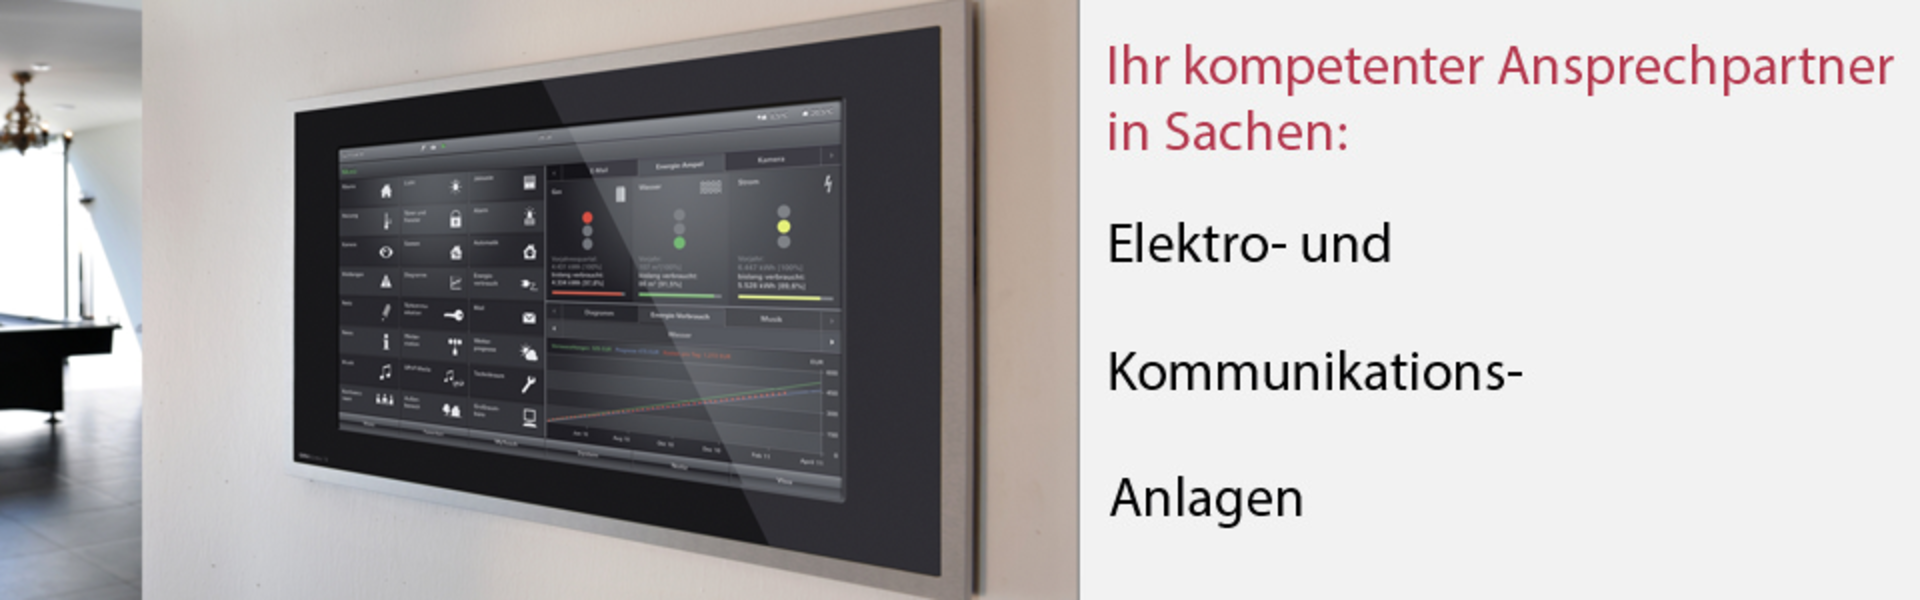 Kakuschke & Luft GmbH in Gera